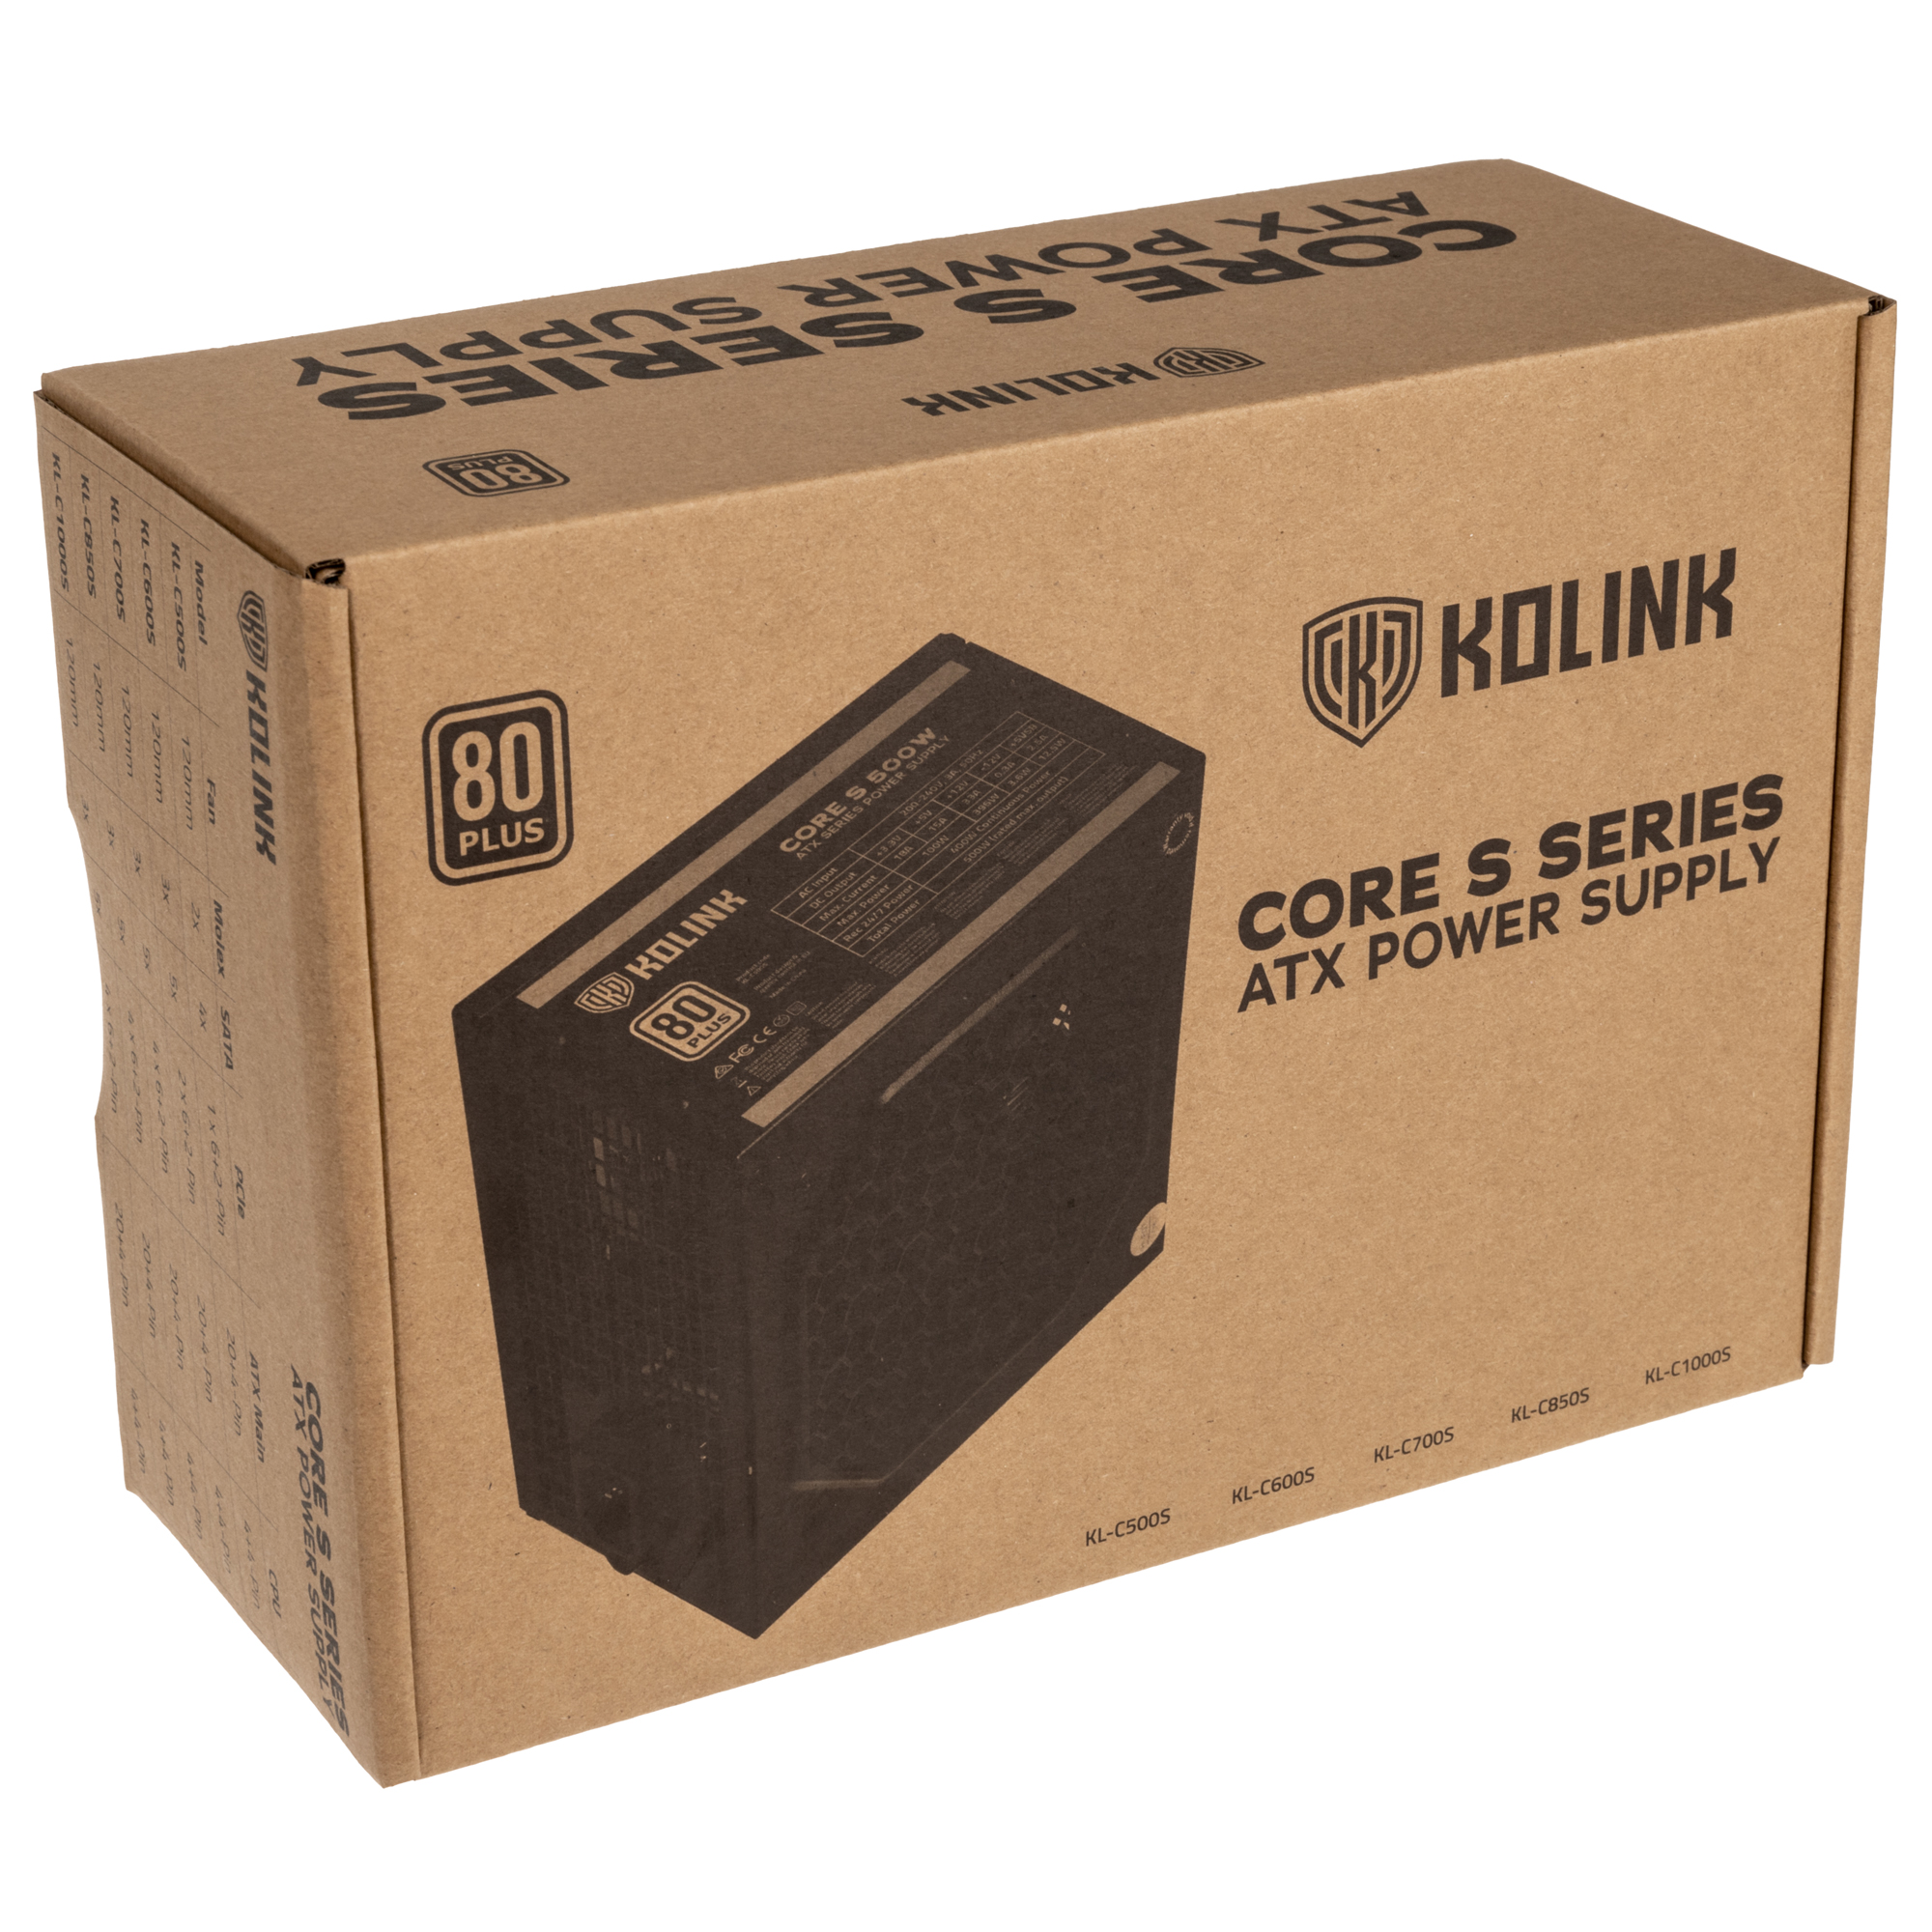 Kolink - Kolink Core S Series 600W 80 Plus Certified Power Supply